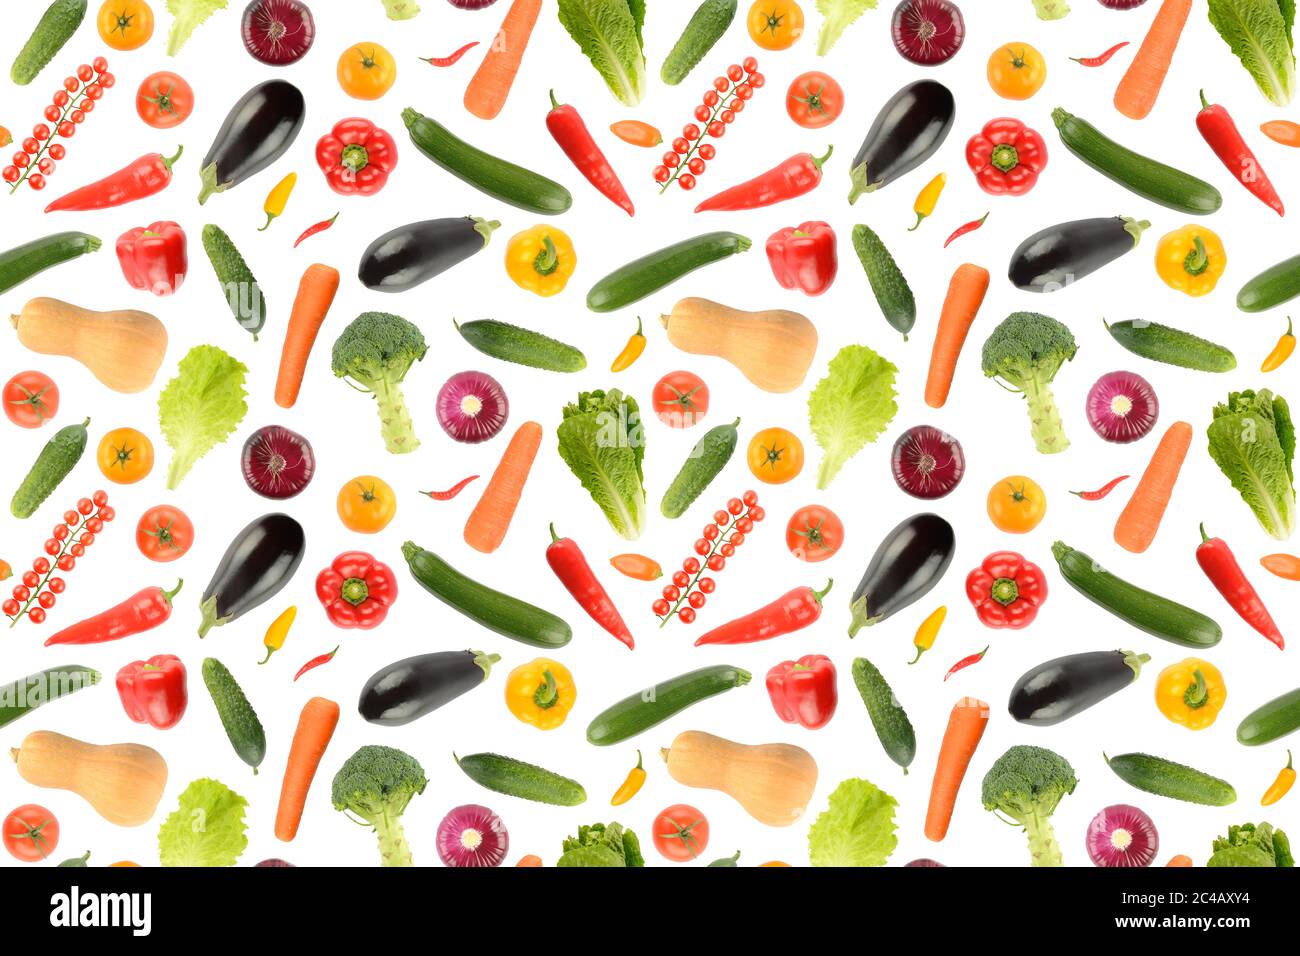 Motif sans couture divers légumes isolés sur fond blanc sans ombre. Texture répétée Banque D'Images